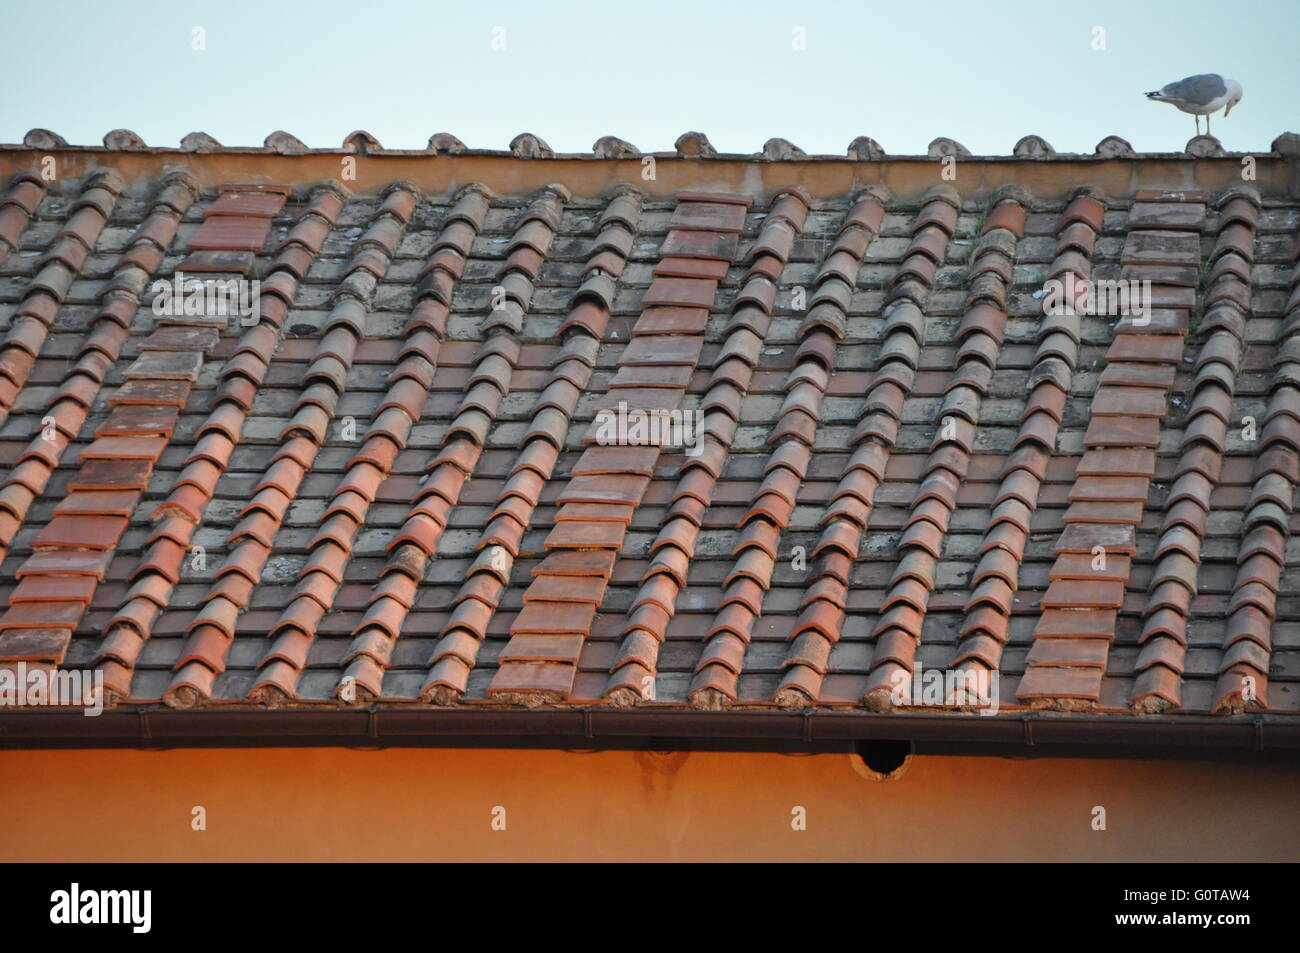 Détail d'une image d'un sol en terre cuite toiture en Italie avec mouette Banque D'Images